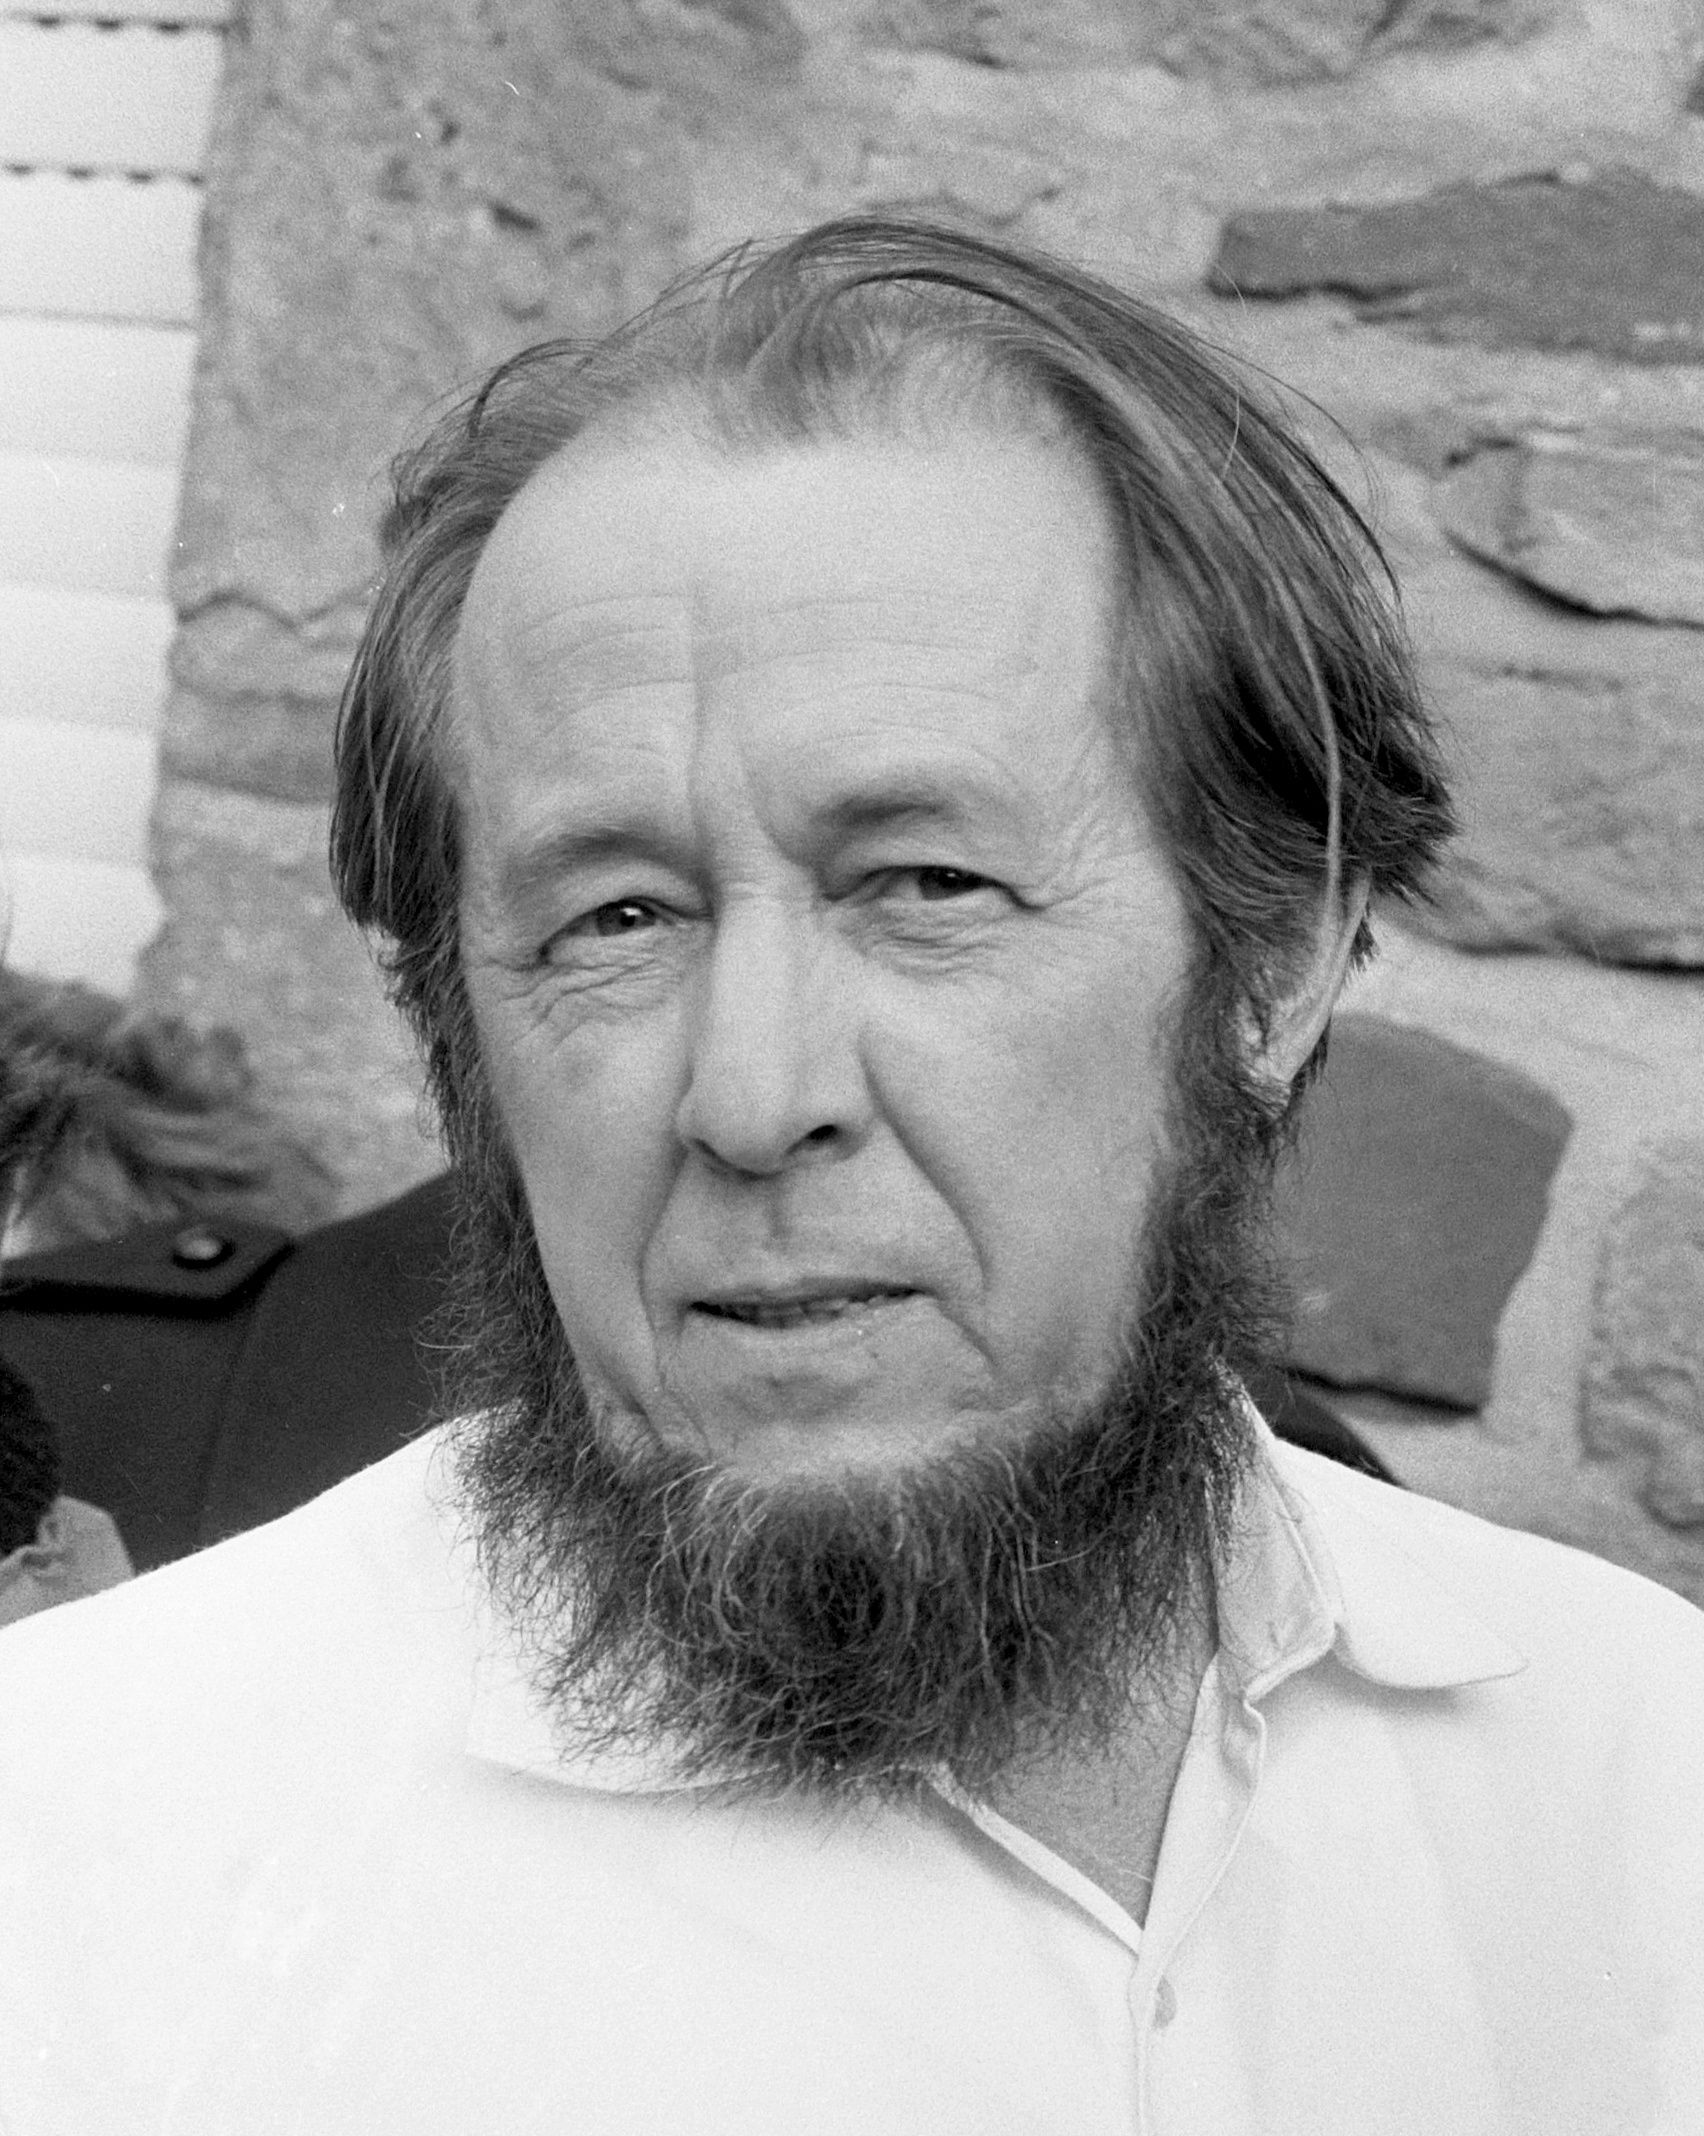 http://upload.wikimedia.org/wikipedia/commons/8/8d/Aleksandr_Solzhenitsyn_1974crop.jpg